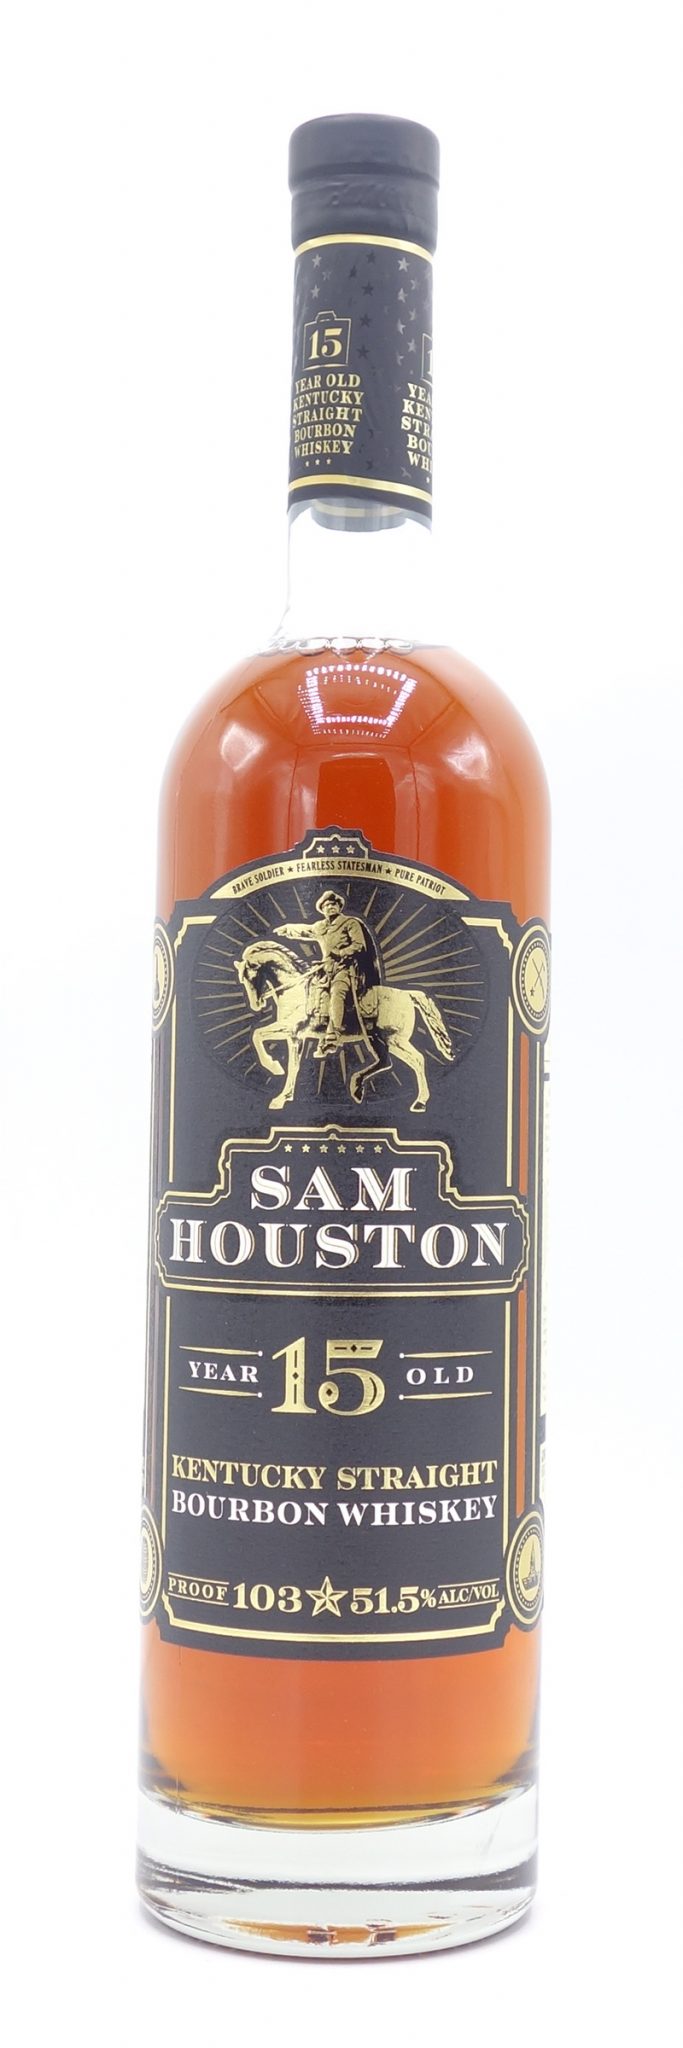 Sam Houston Bourbon Whiskey 15 Year Old, Batch #5 750ml